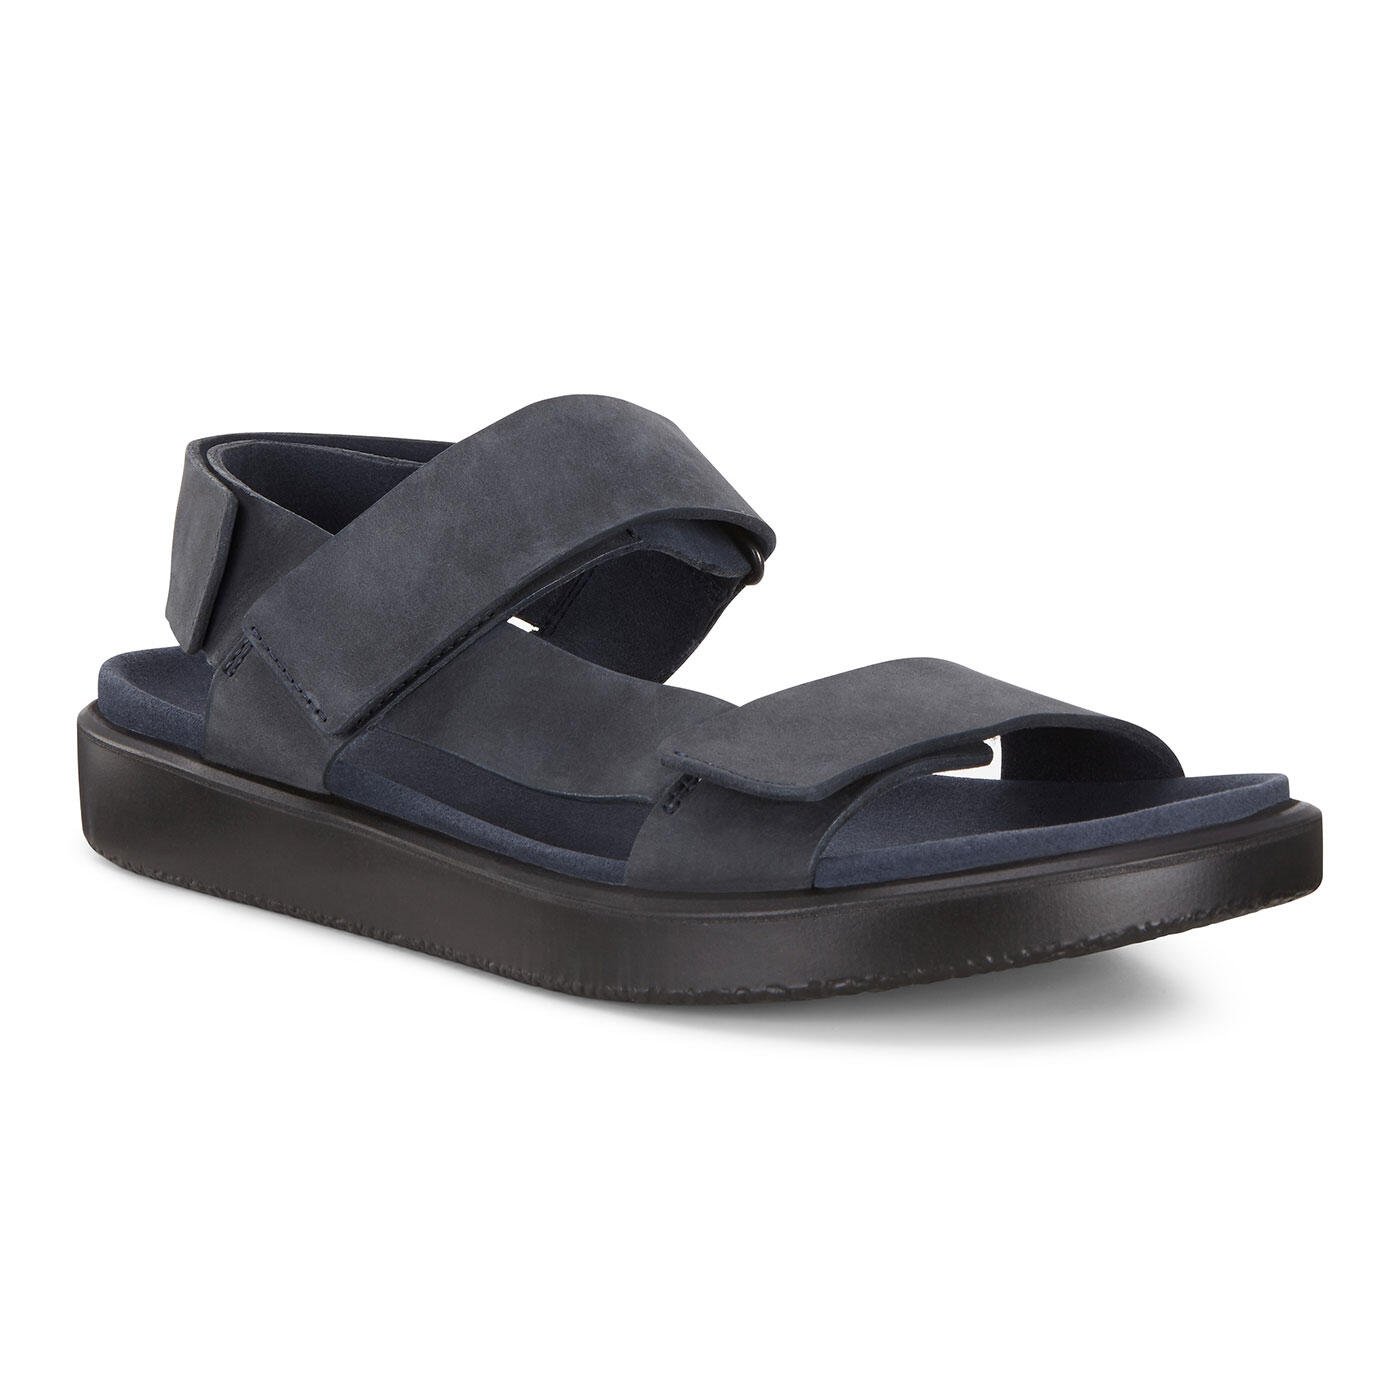 Men's Flowt Sandals | Official Store | ECCO® Shoes